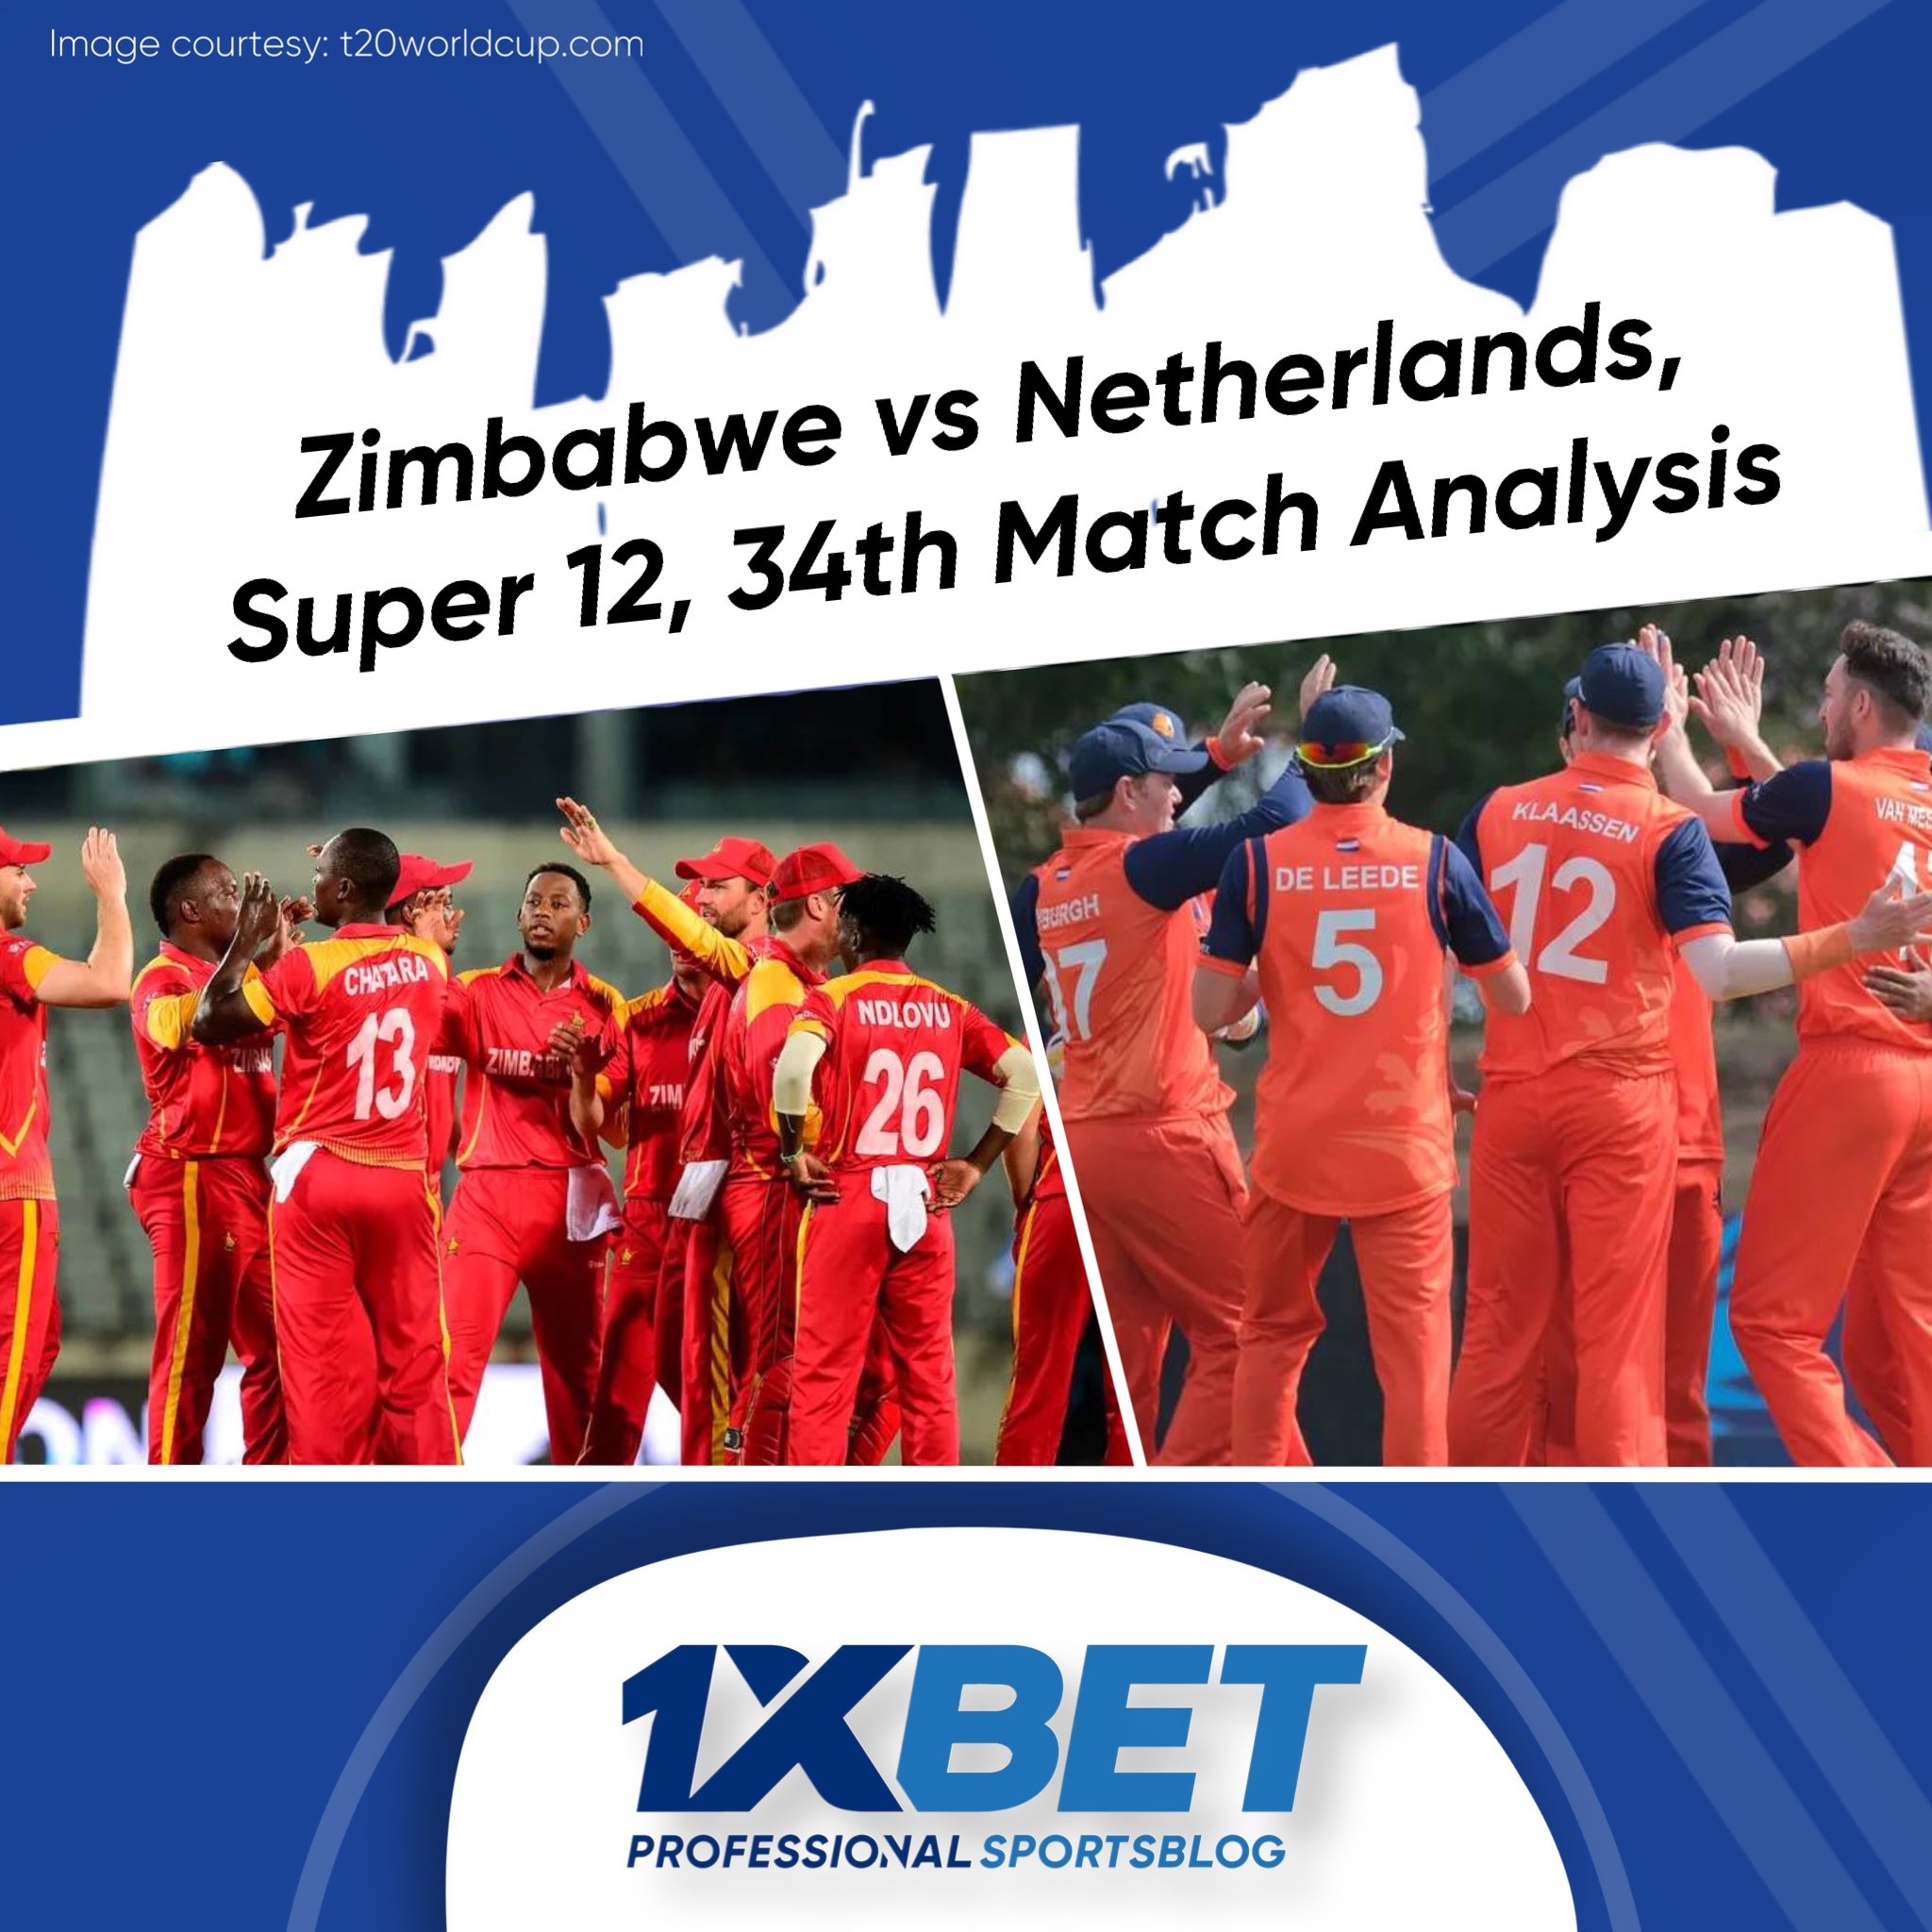 Zimbabwe vs Netherlands, Super 12, 34th Match Analysis